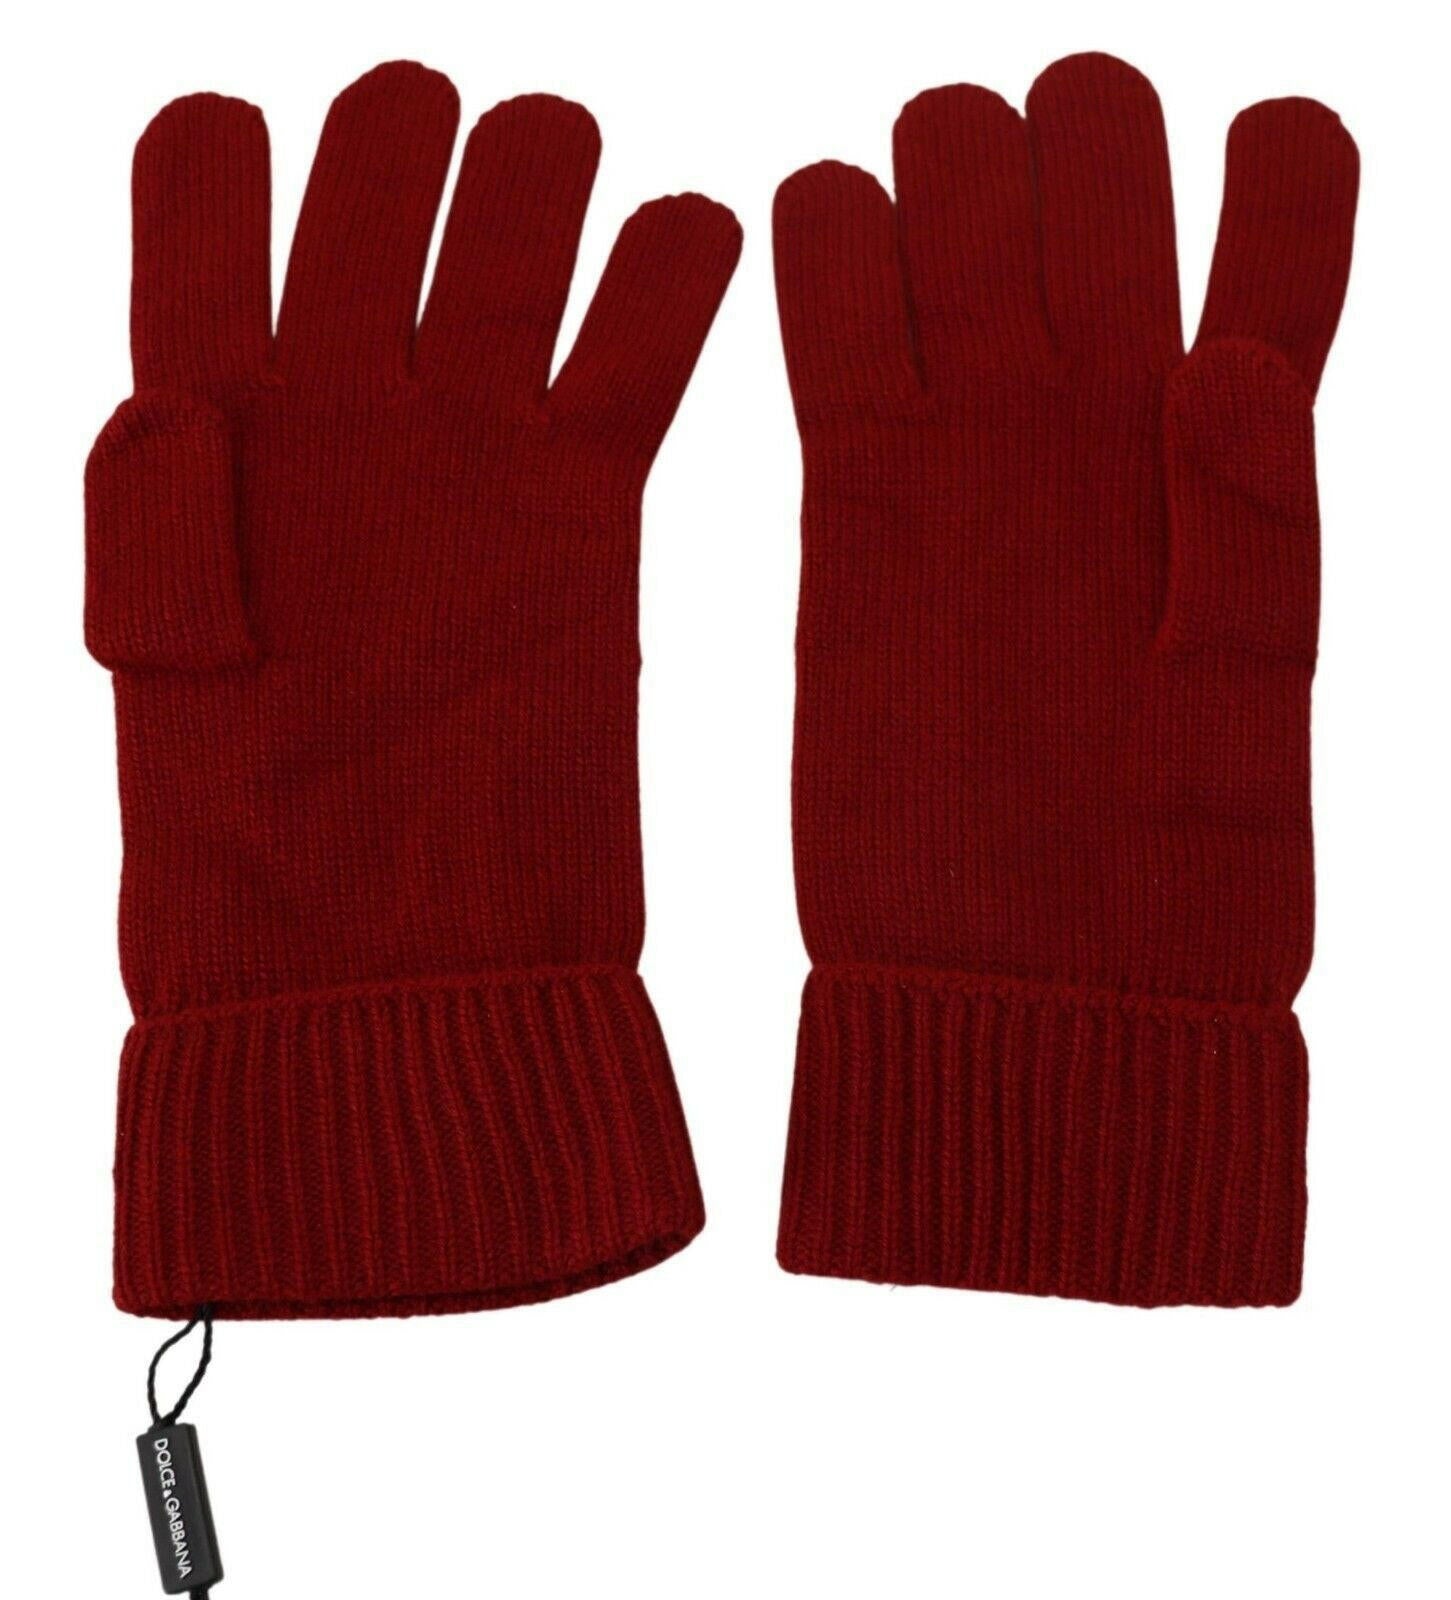 Dolce & Gabbana Red 100% Cashmere Knit Hands Mitten Mens Gloves - GENUINE AUTHENTIC BRAND LLC  